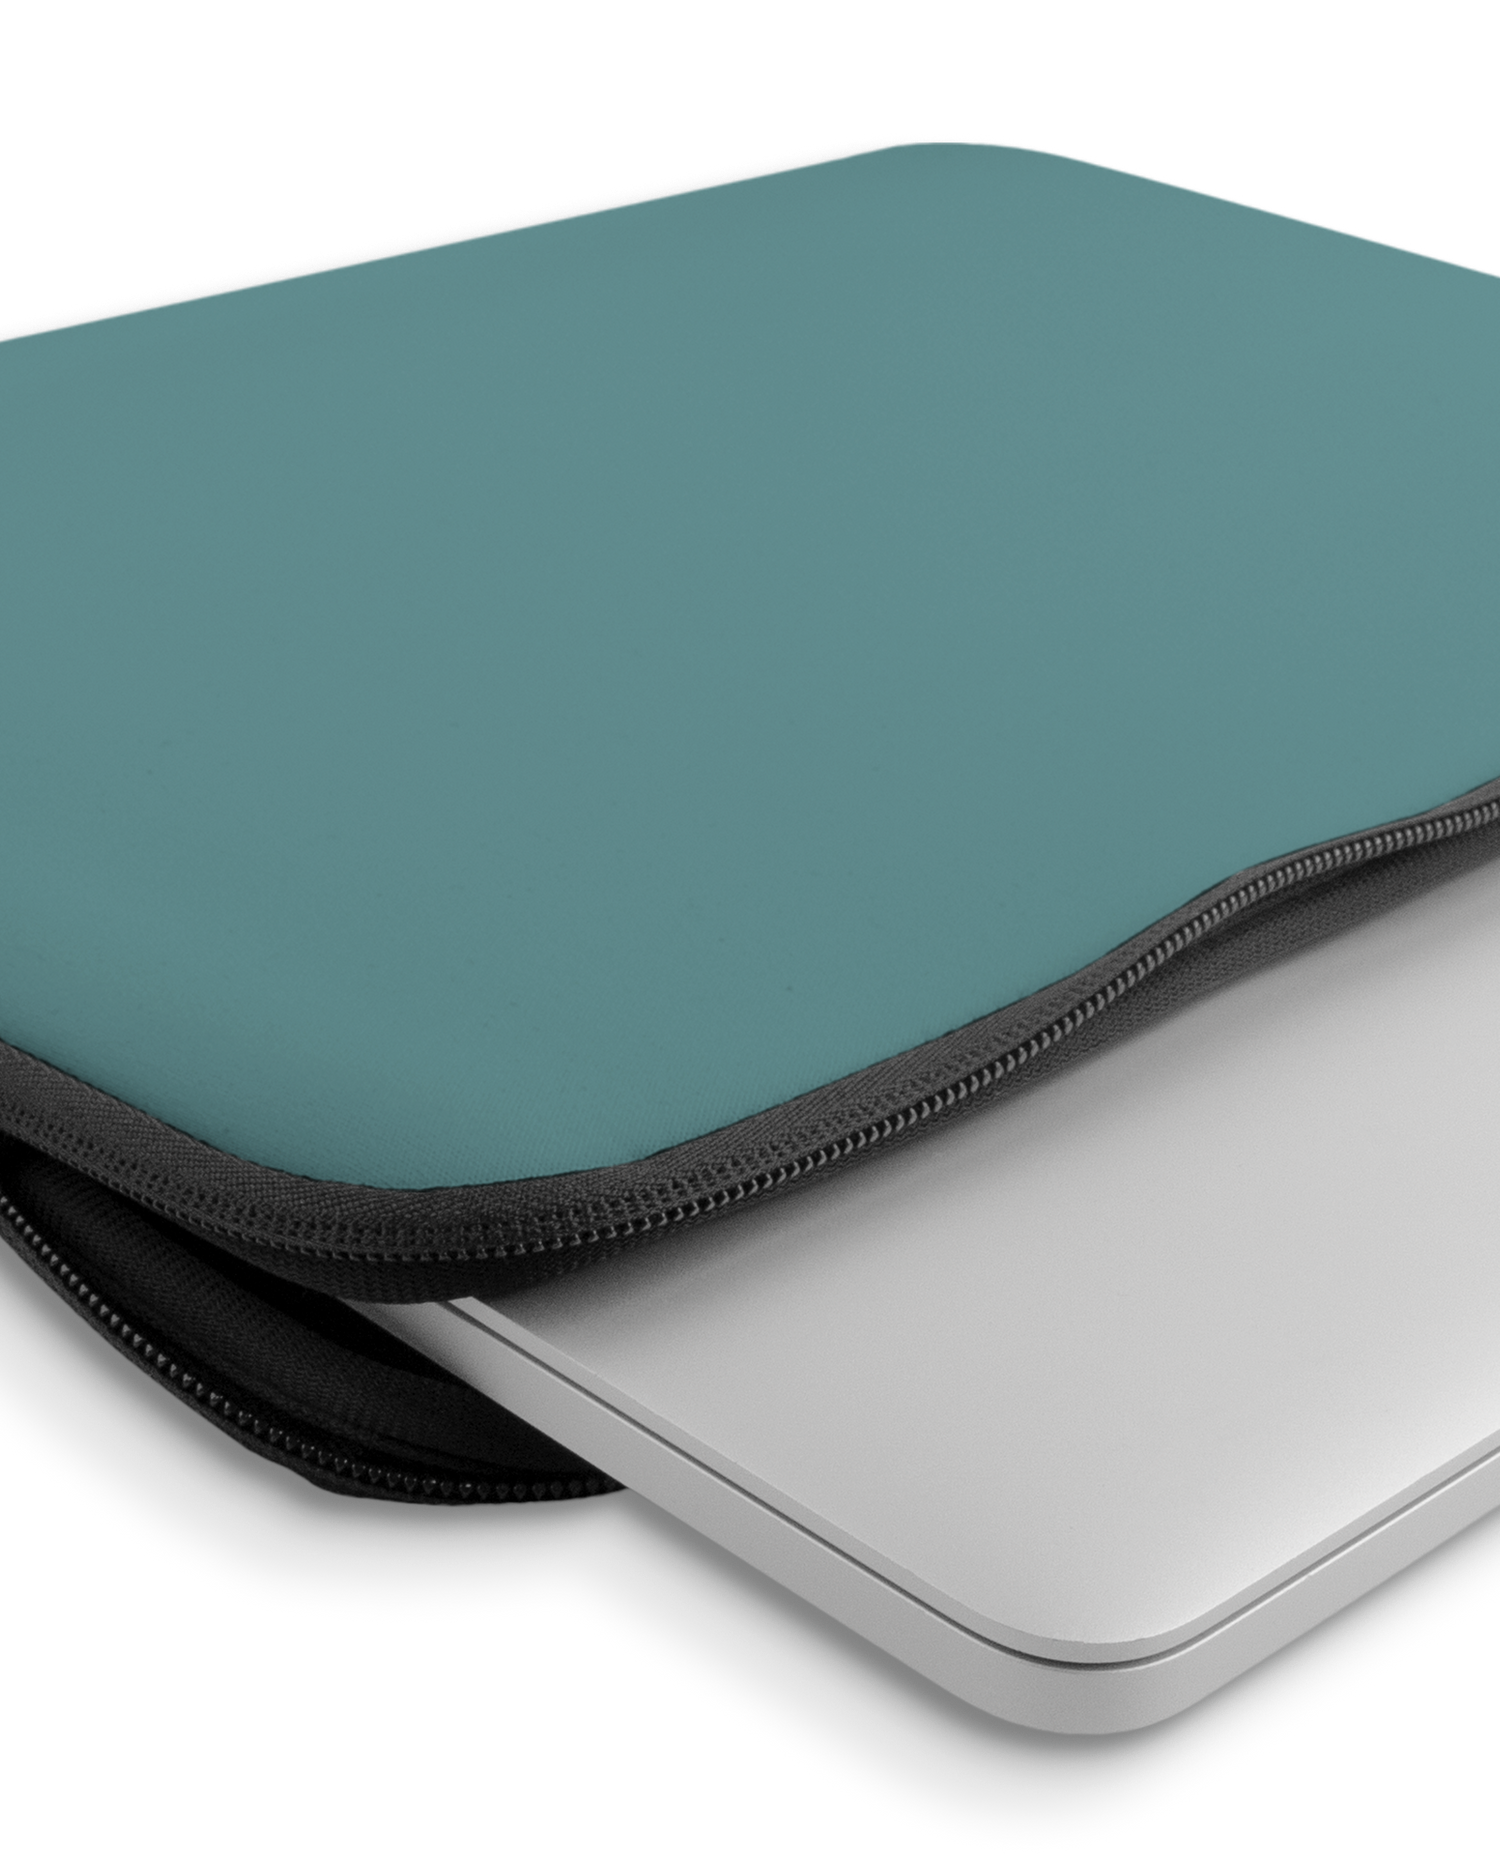 TURQUOISE Laptophülle 14-15 Zoll mit Gerät im Inneren